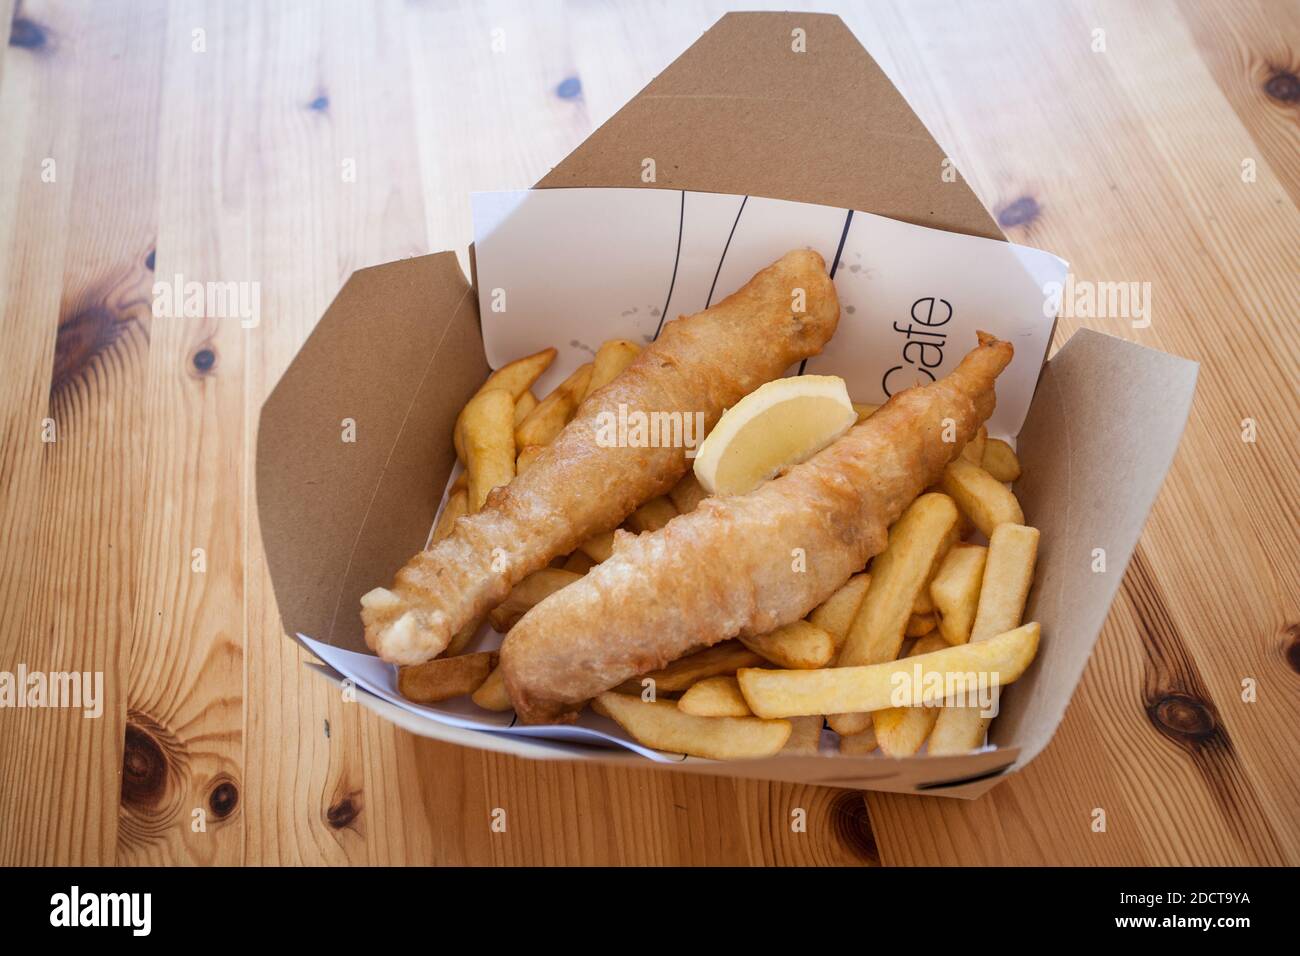 Frisch zubereiteter hochwertiger Fisch und Chips porthminster Beach Cafe Take Away Box auf Holztisch Stockfoto